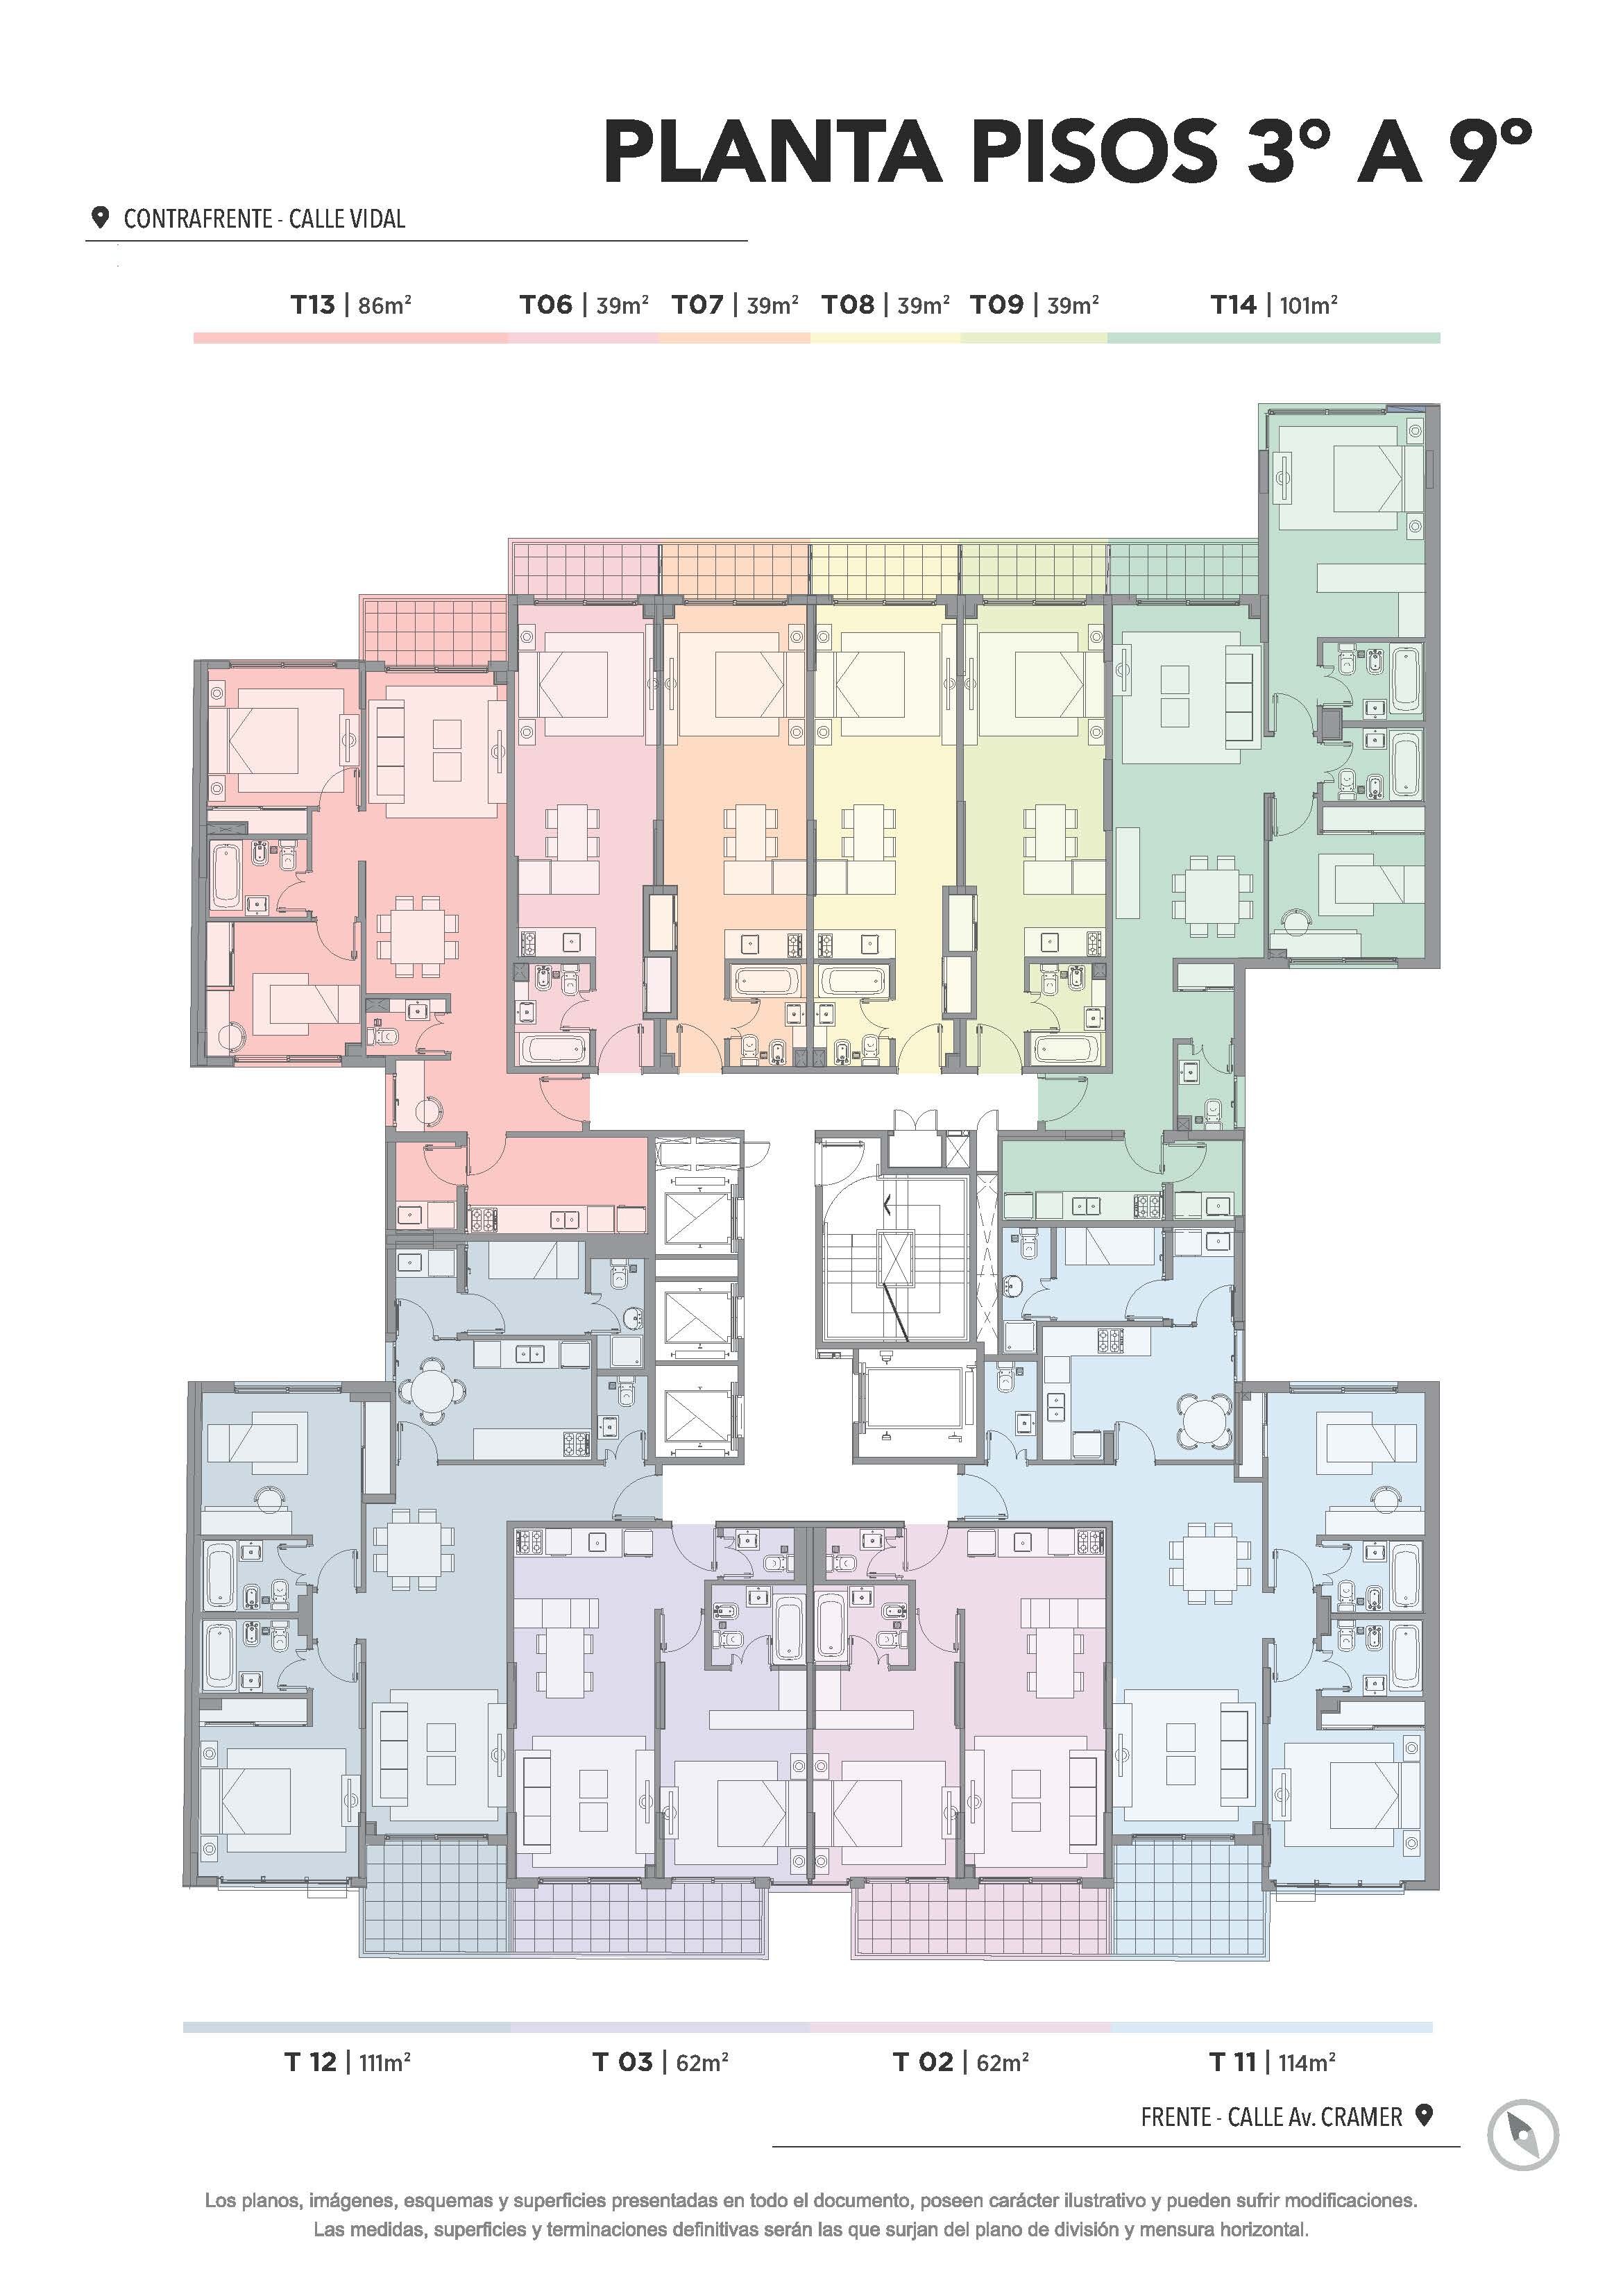 My Residence - Plantas Generales 2020_Page_04.jpg